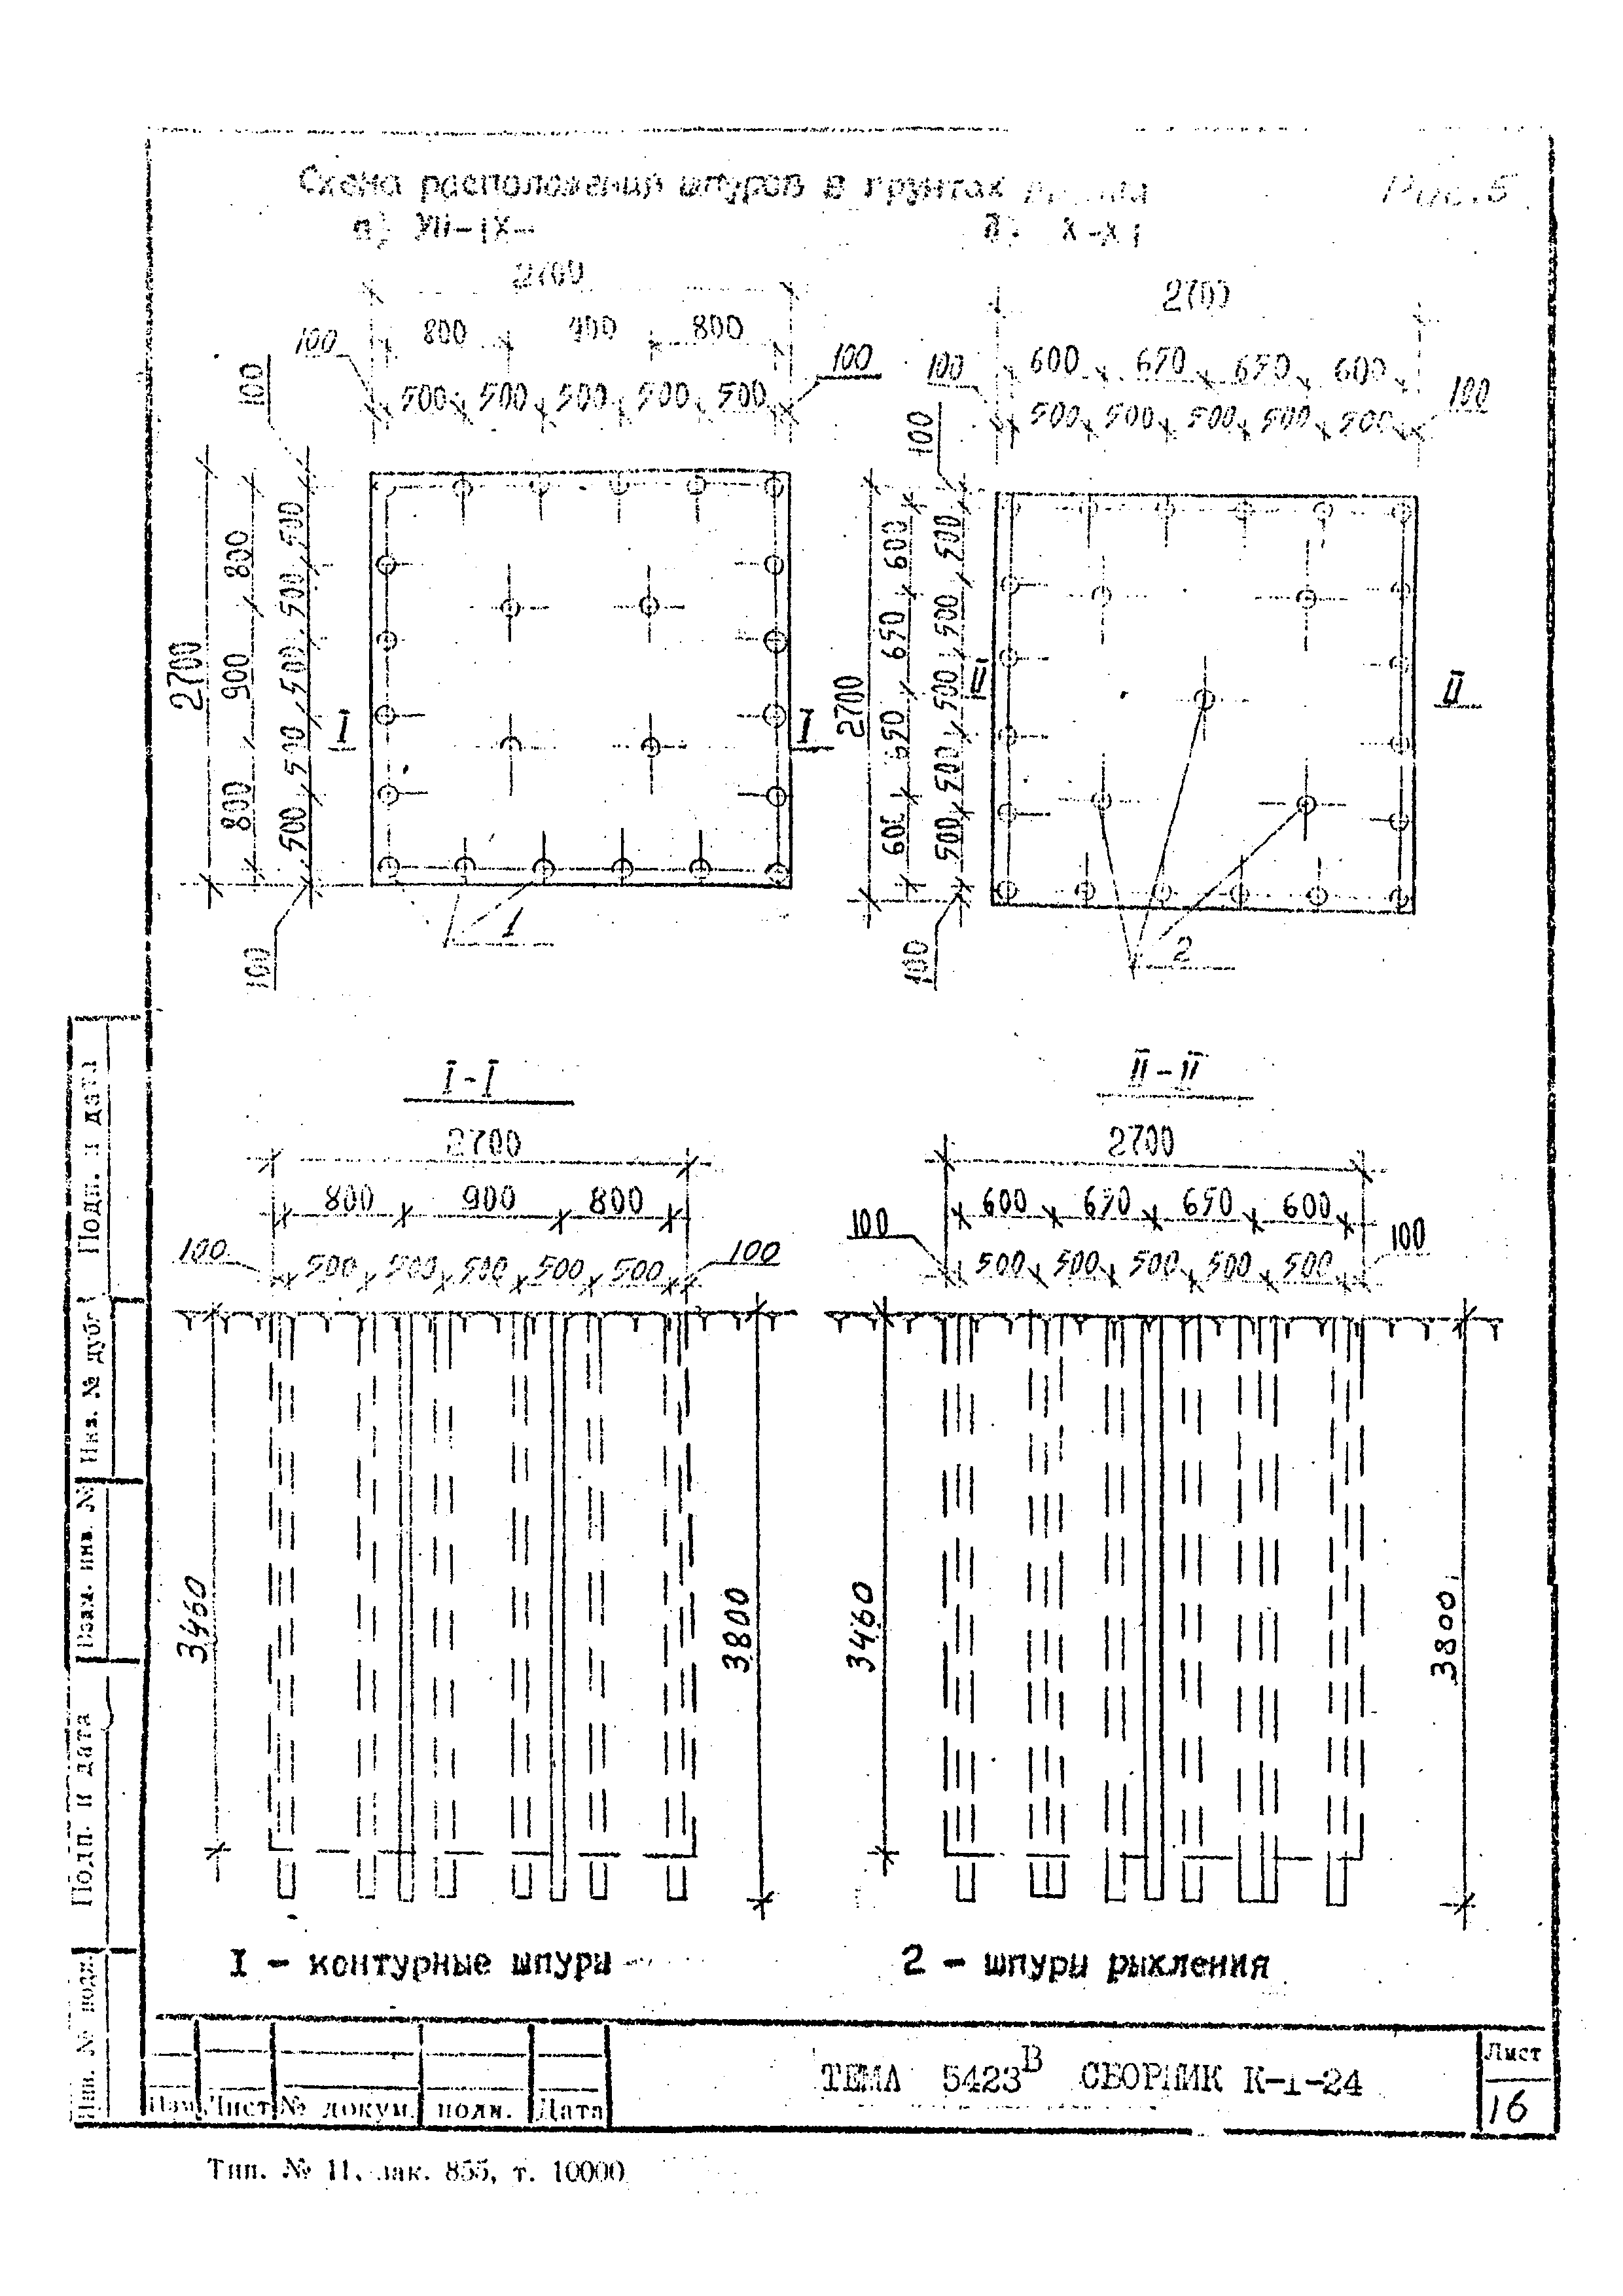 Технологическая карта К-1-24